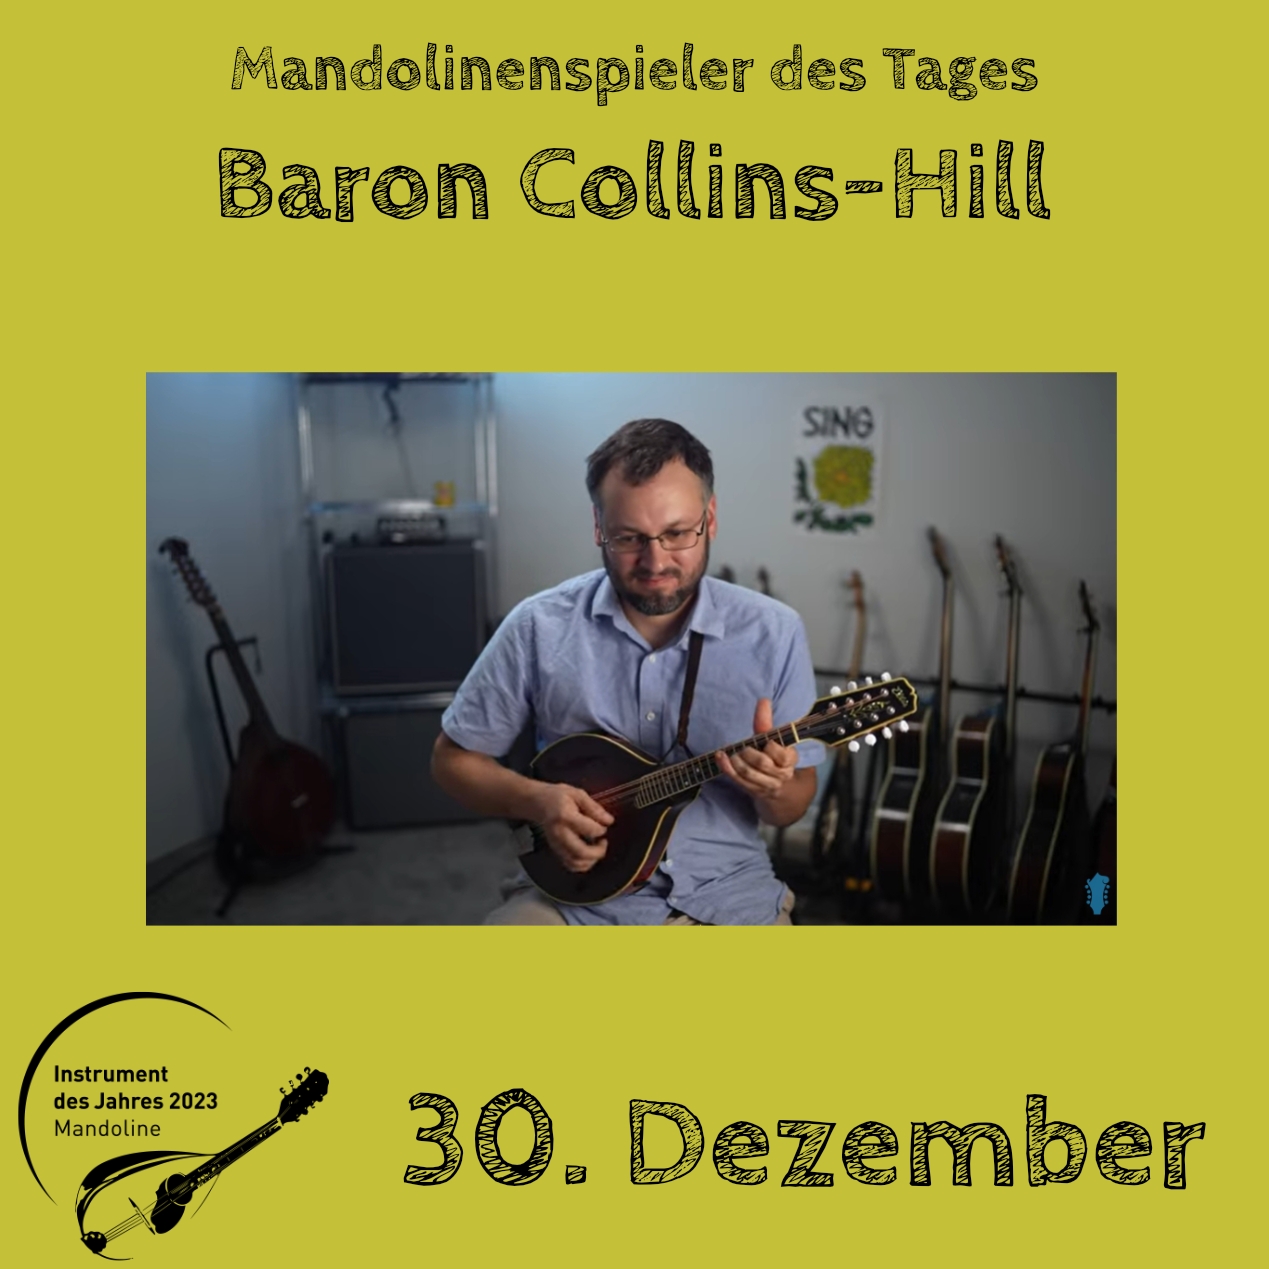 30. Dezember - Baron Collins-Hill Instrument des Jahres 2023 Mandolinenspieler Mandolinenspielerin des Tages